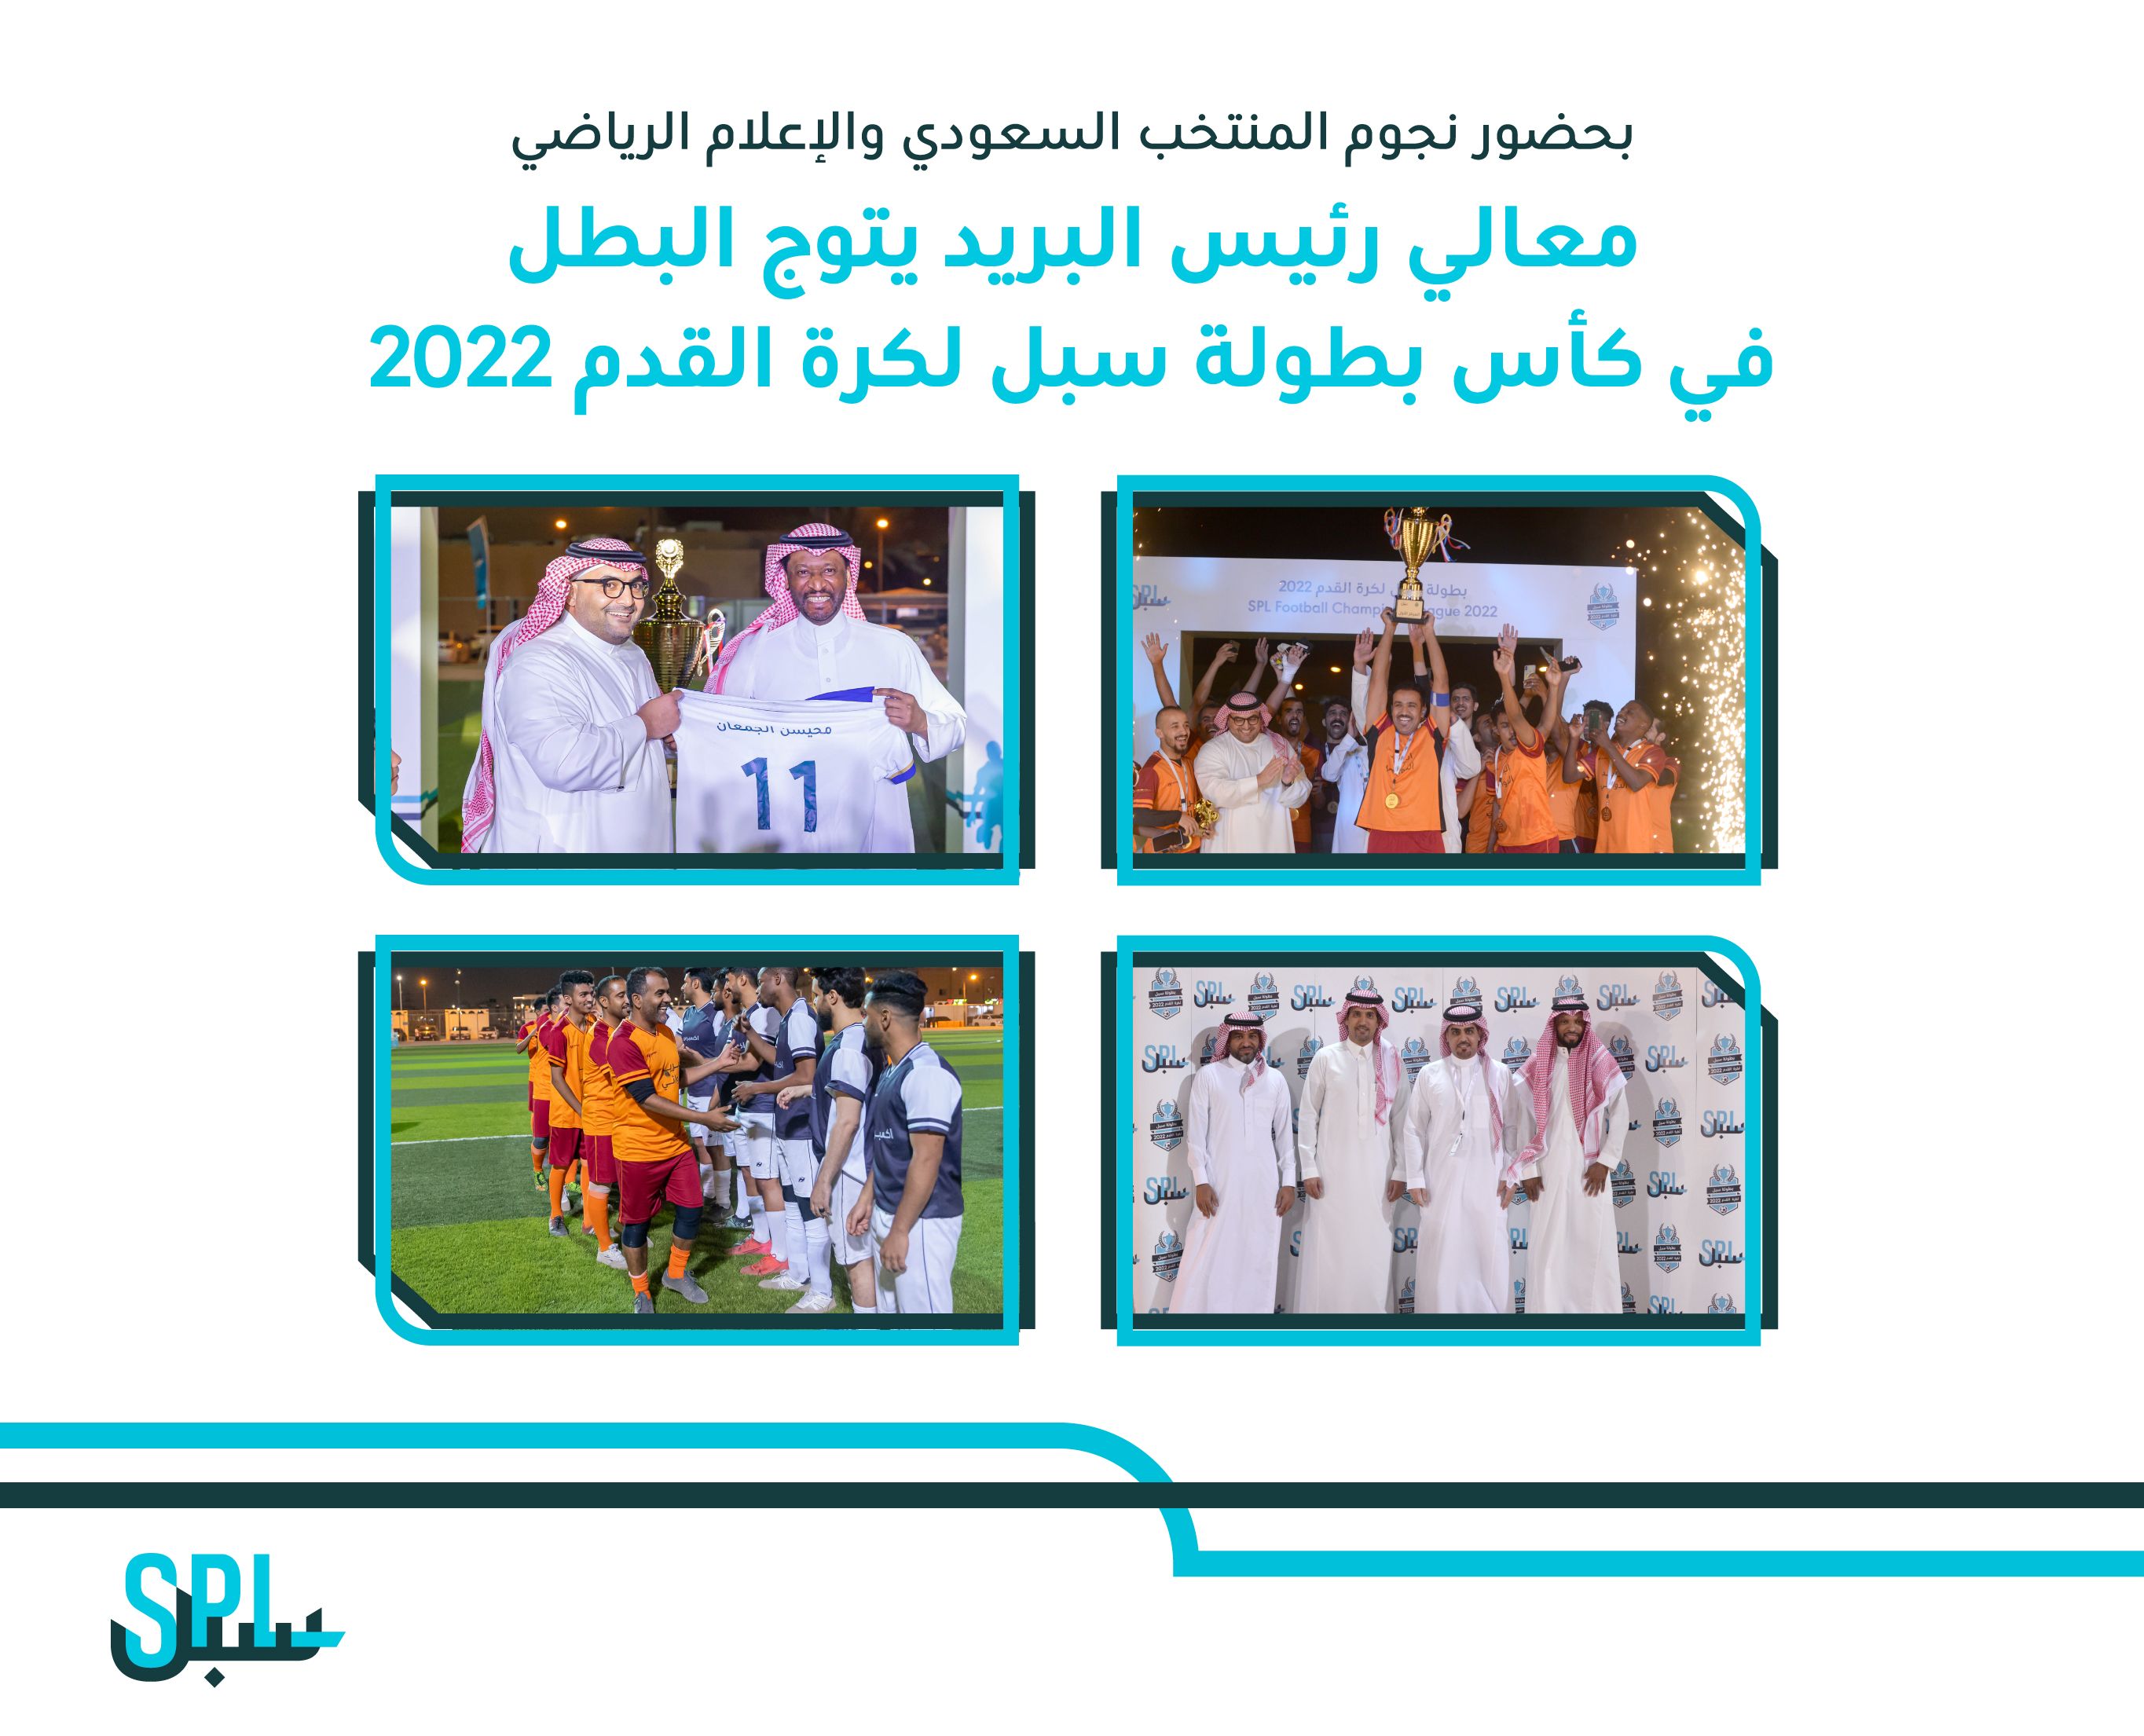 بحضور نجوم المنتخب السعودي والاعلام الرياضي